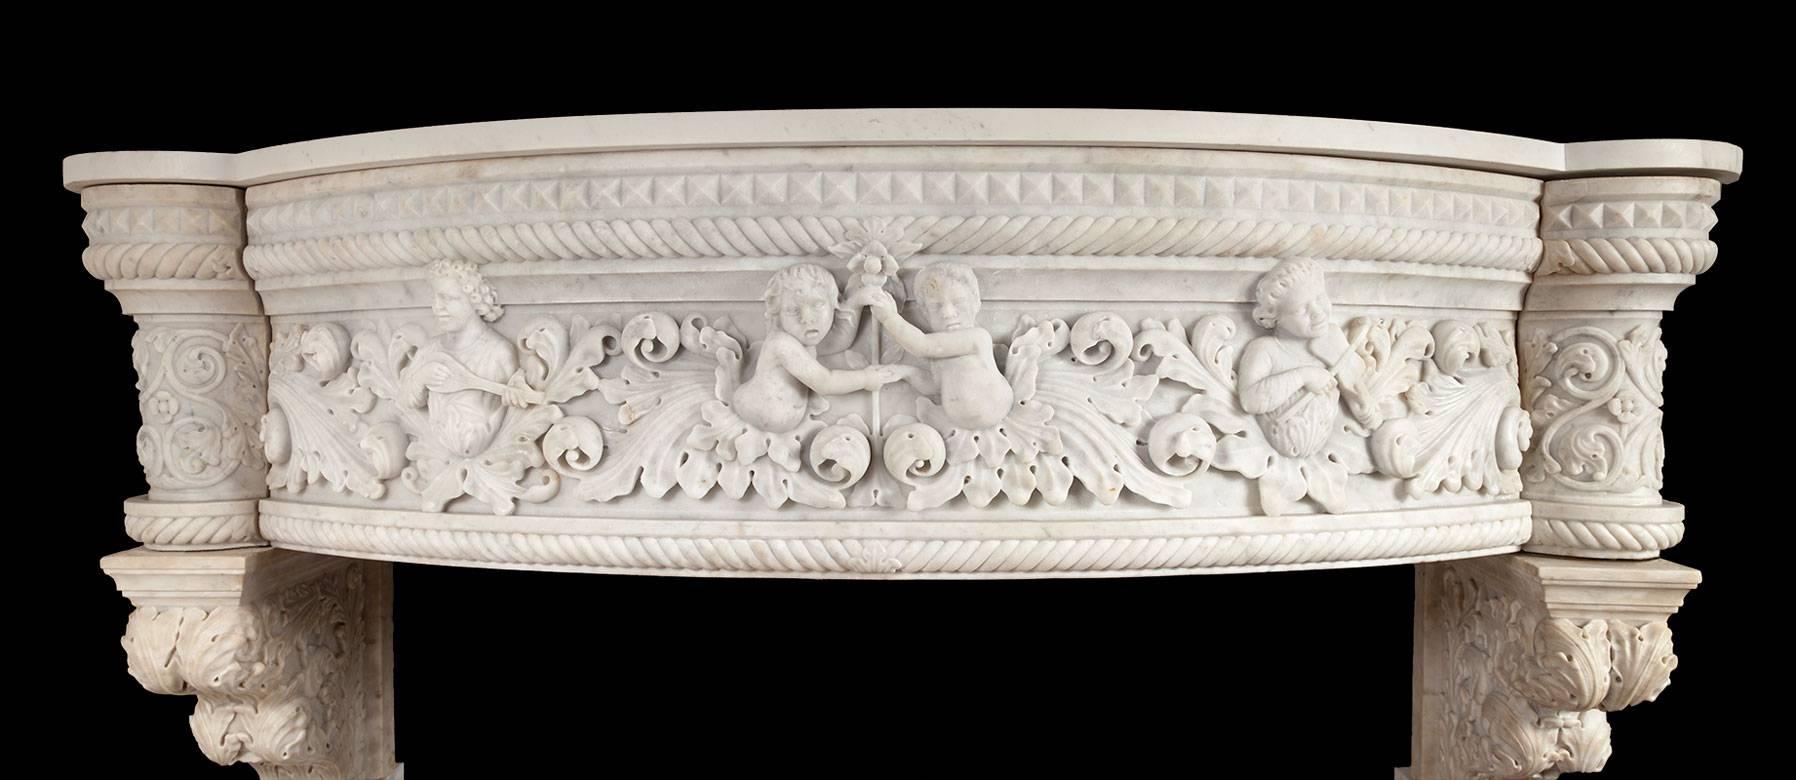 Antiker italienischer Carrara-Marmorsims im Stil der venezianischen Renaissance. Die Laibungen mit korinthischen Säulen mit Seildrehung, die große Akanthuskonsolen tragen. Der stark geschnitzte Fries hat eine elliptische Form und wölbt sich nach